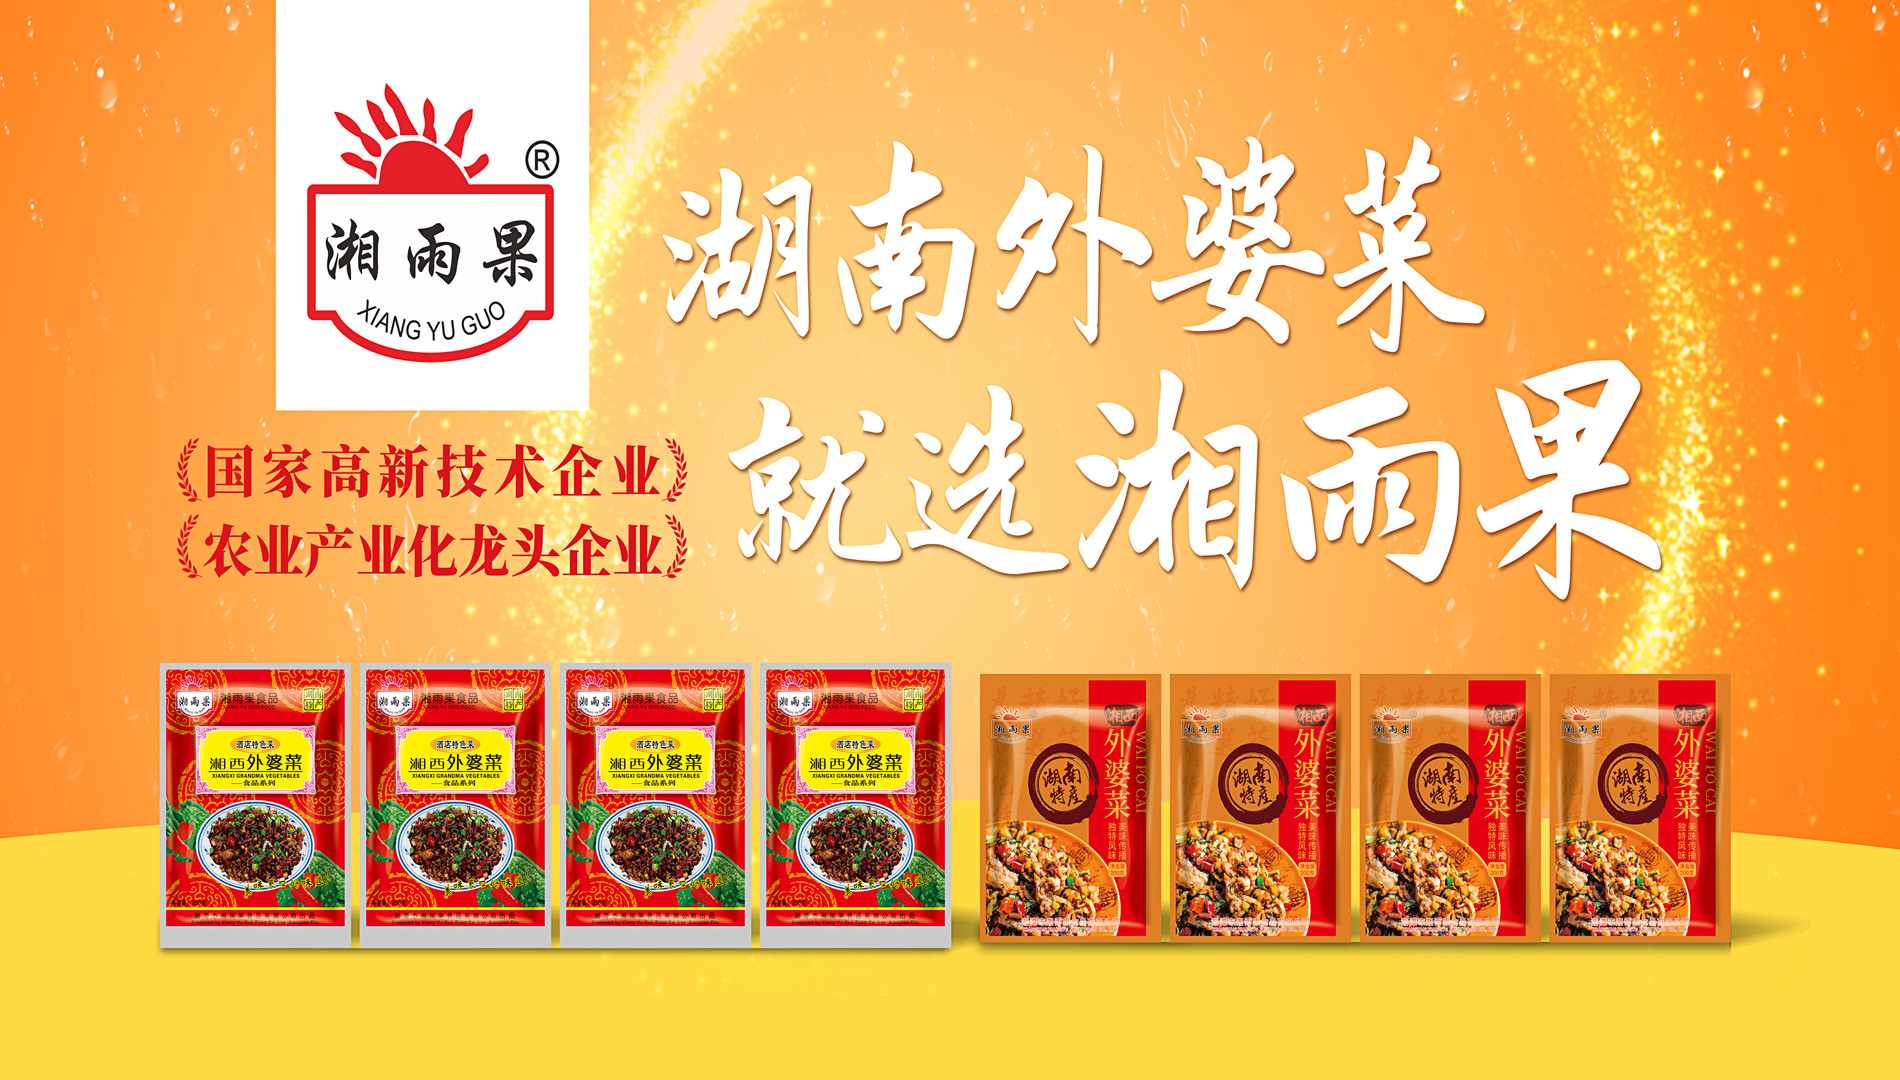 Xiang Yu Guo Food – esivalmistettujen astioiden teollisuuden vertailuyritys